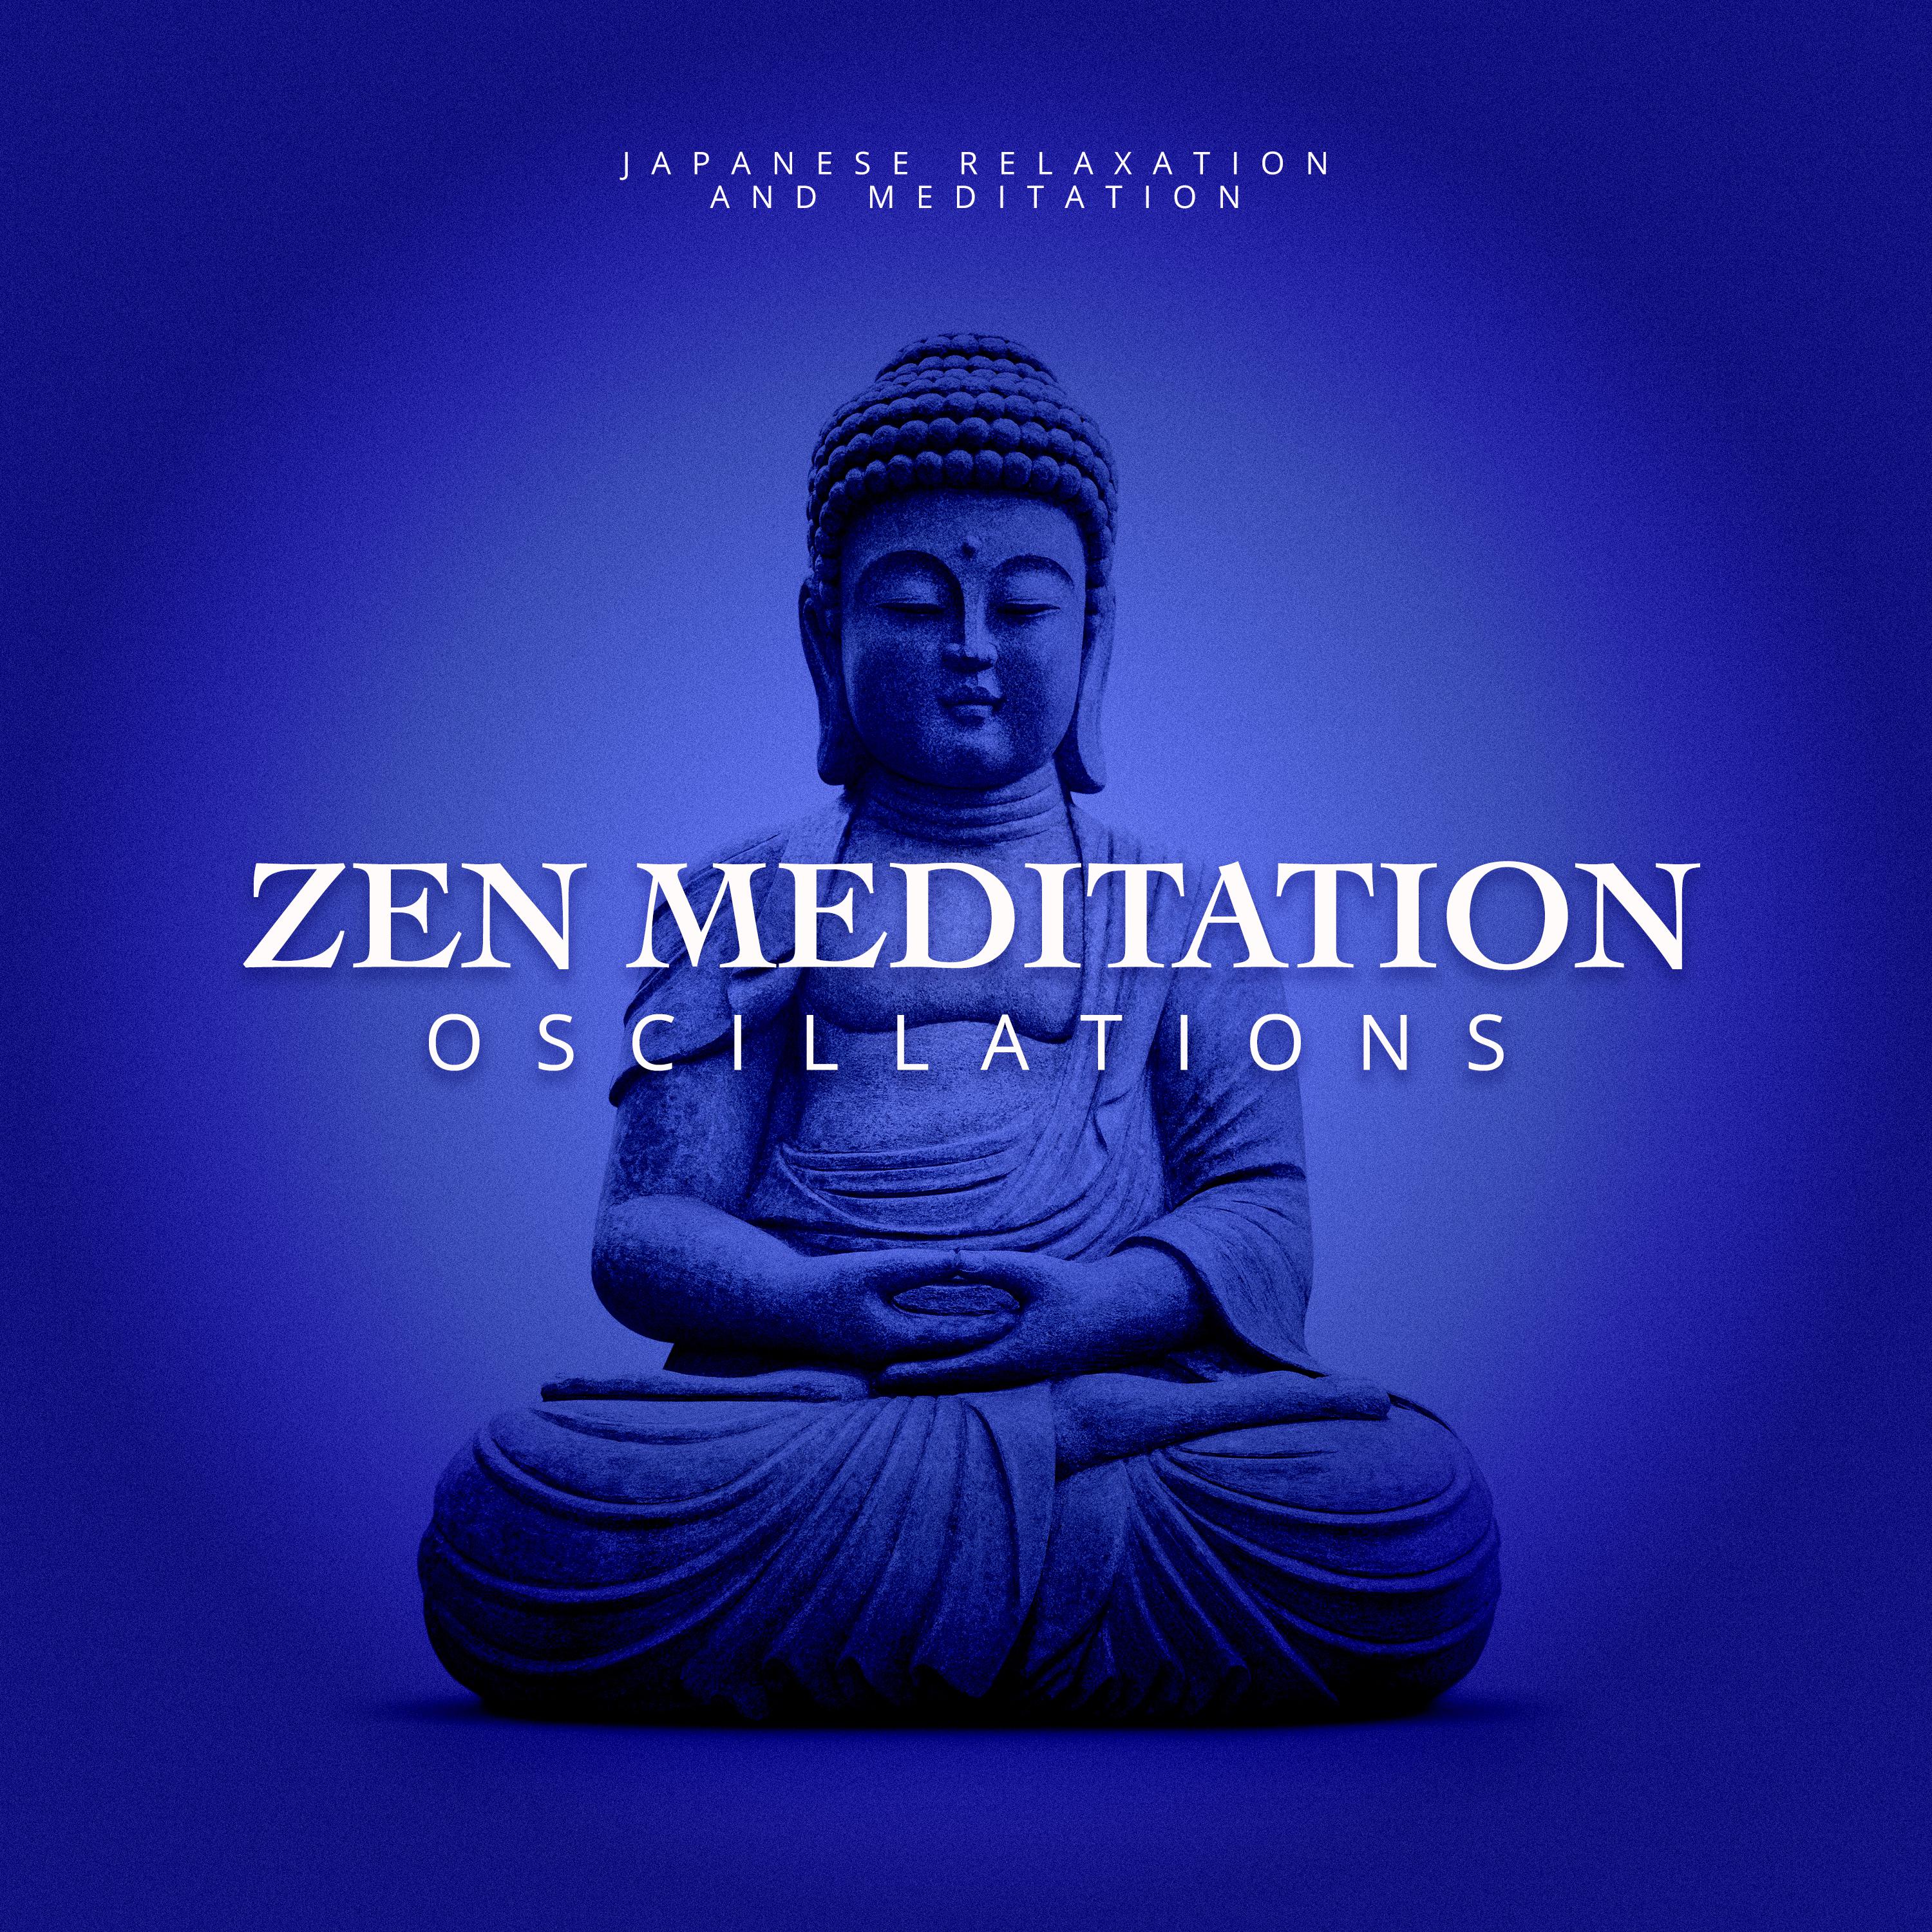 Zen Meditation Oscillations